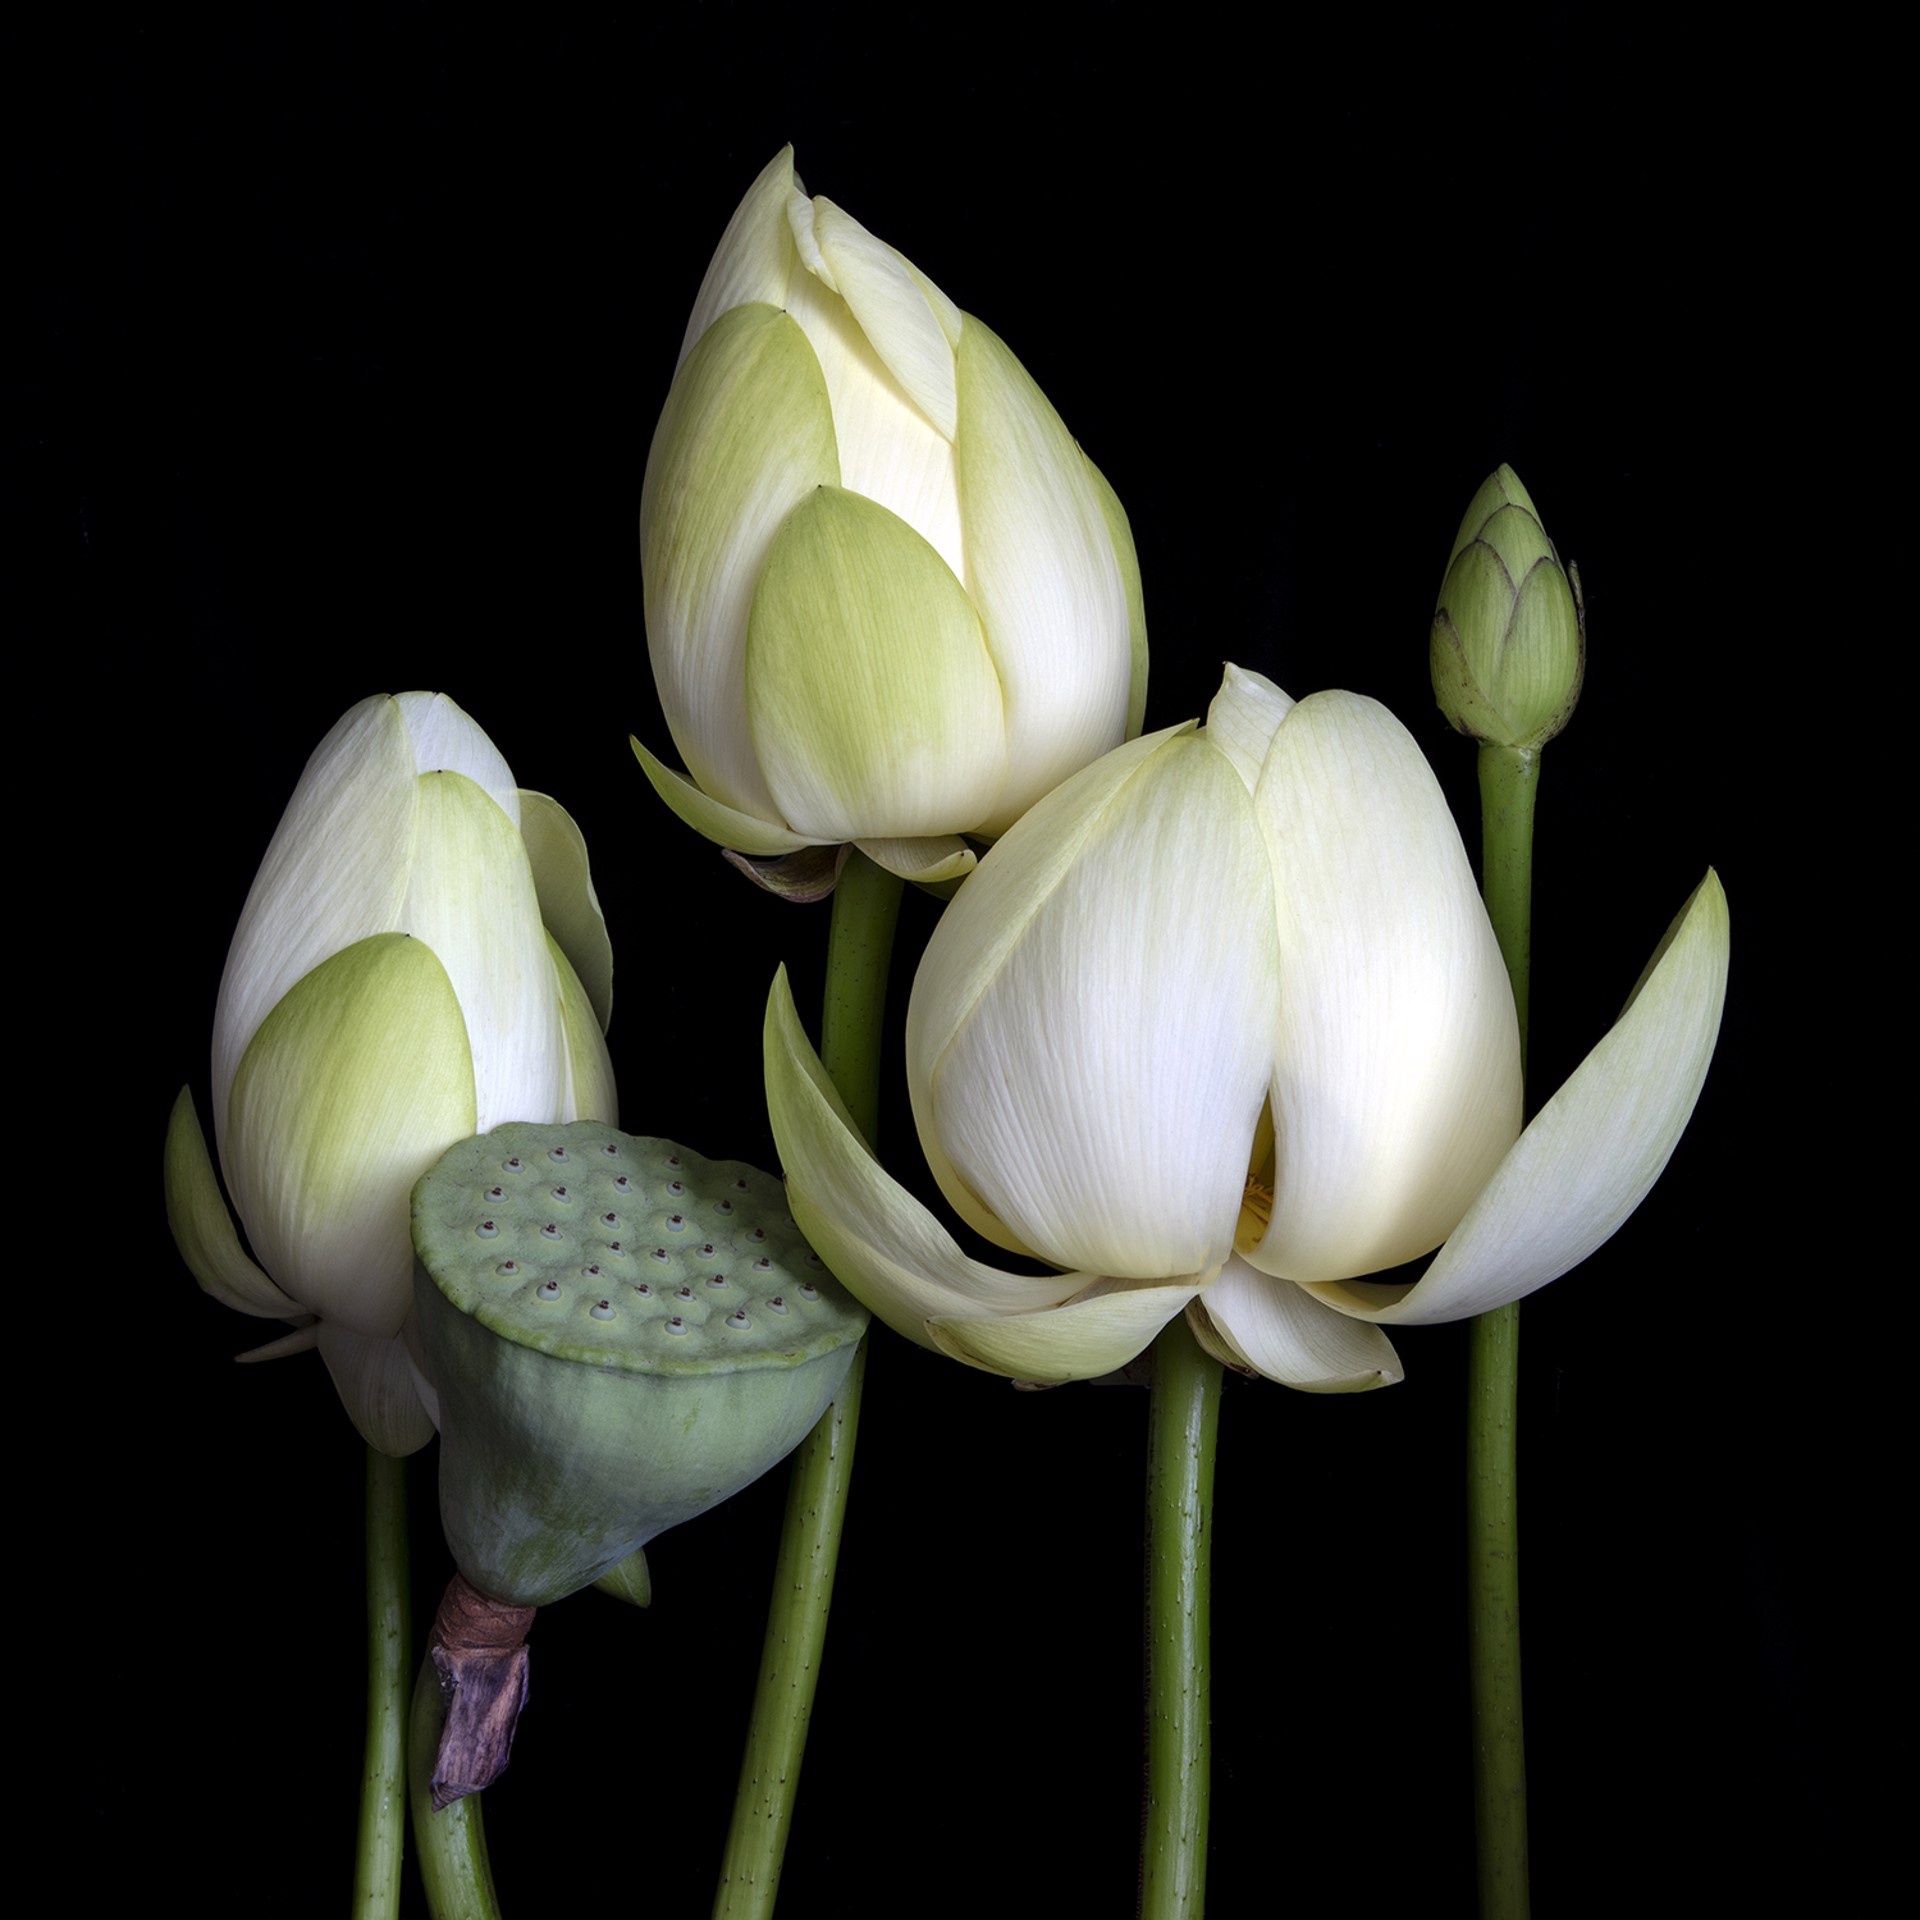 American Lotus (Nelumbo Lutea), 9947 by Molly Wood